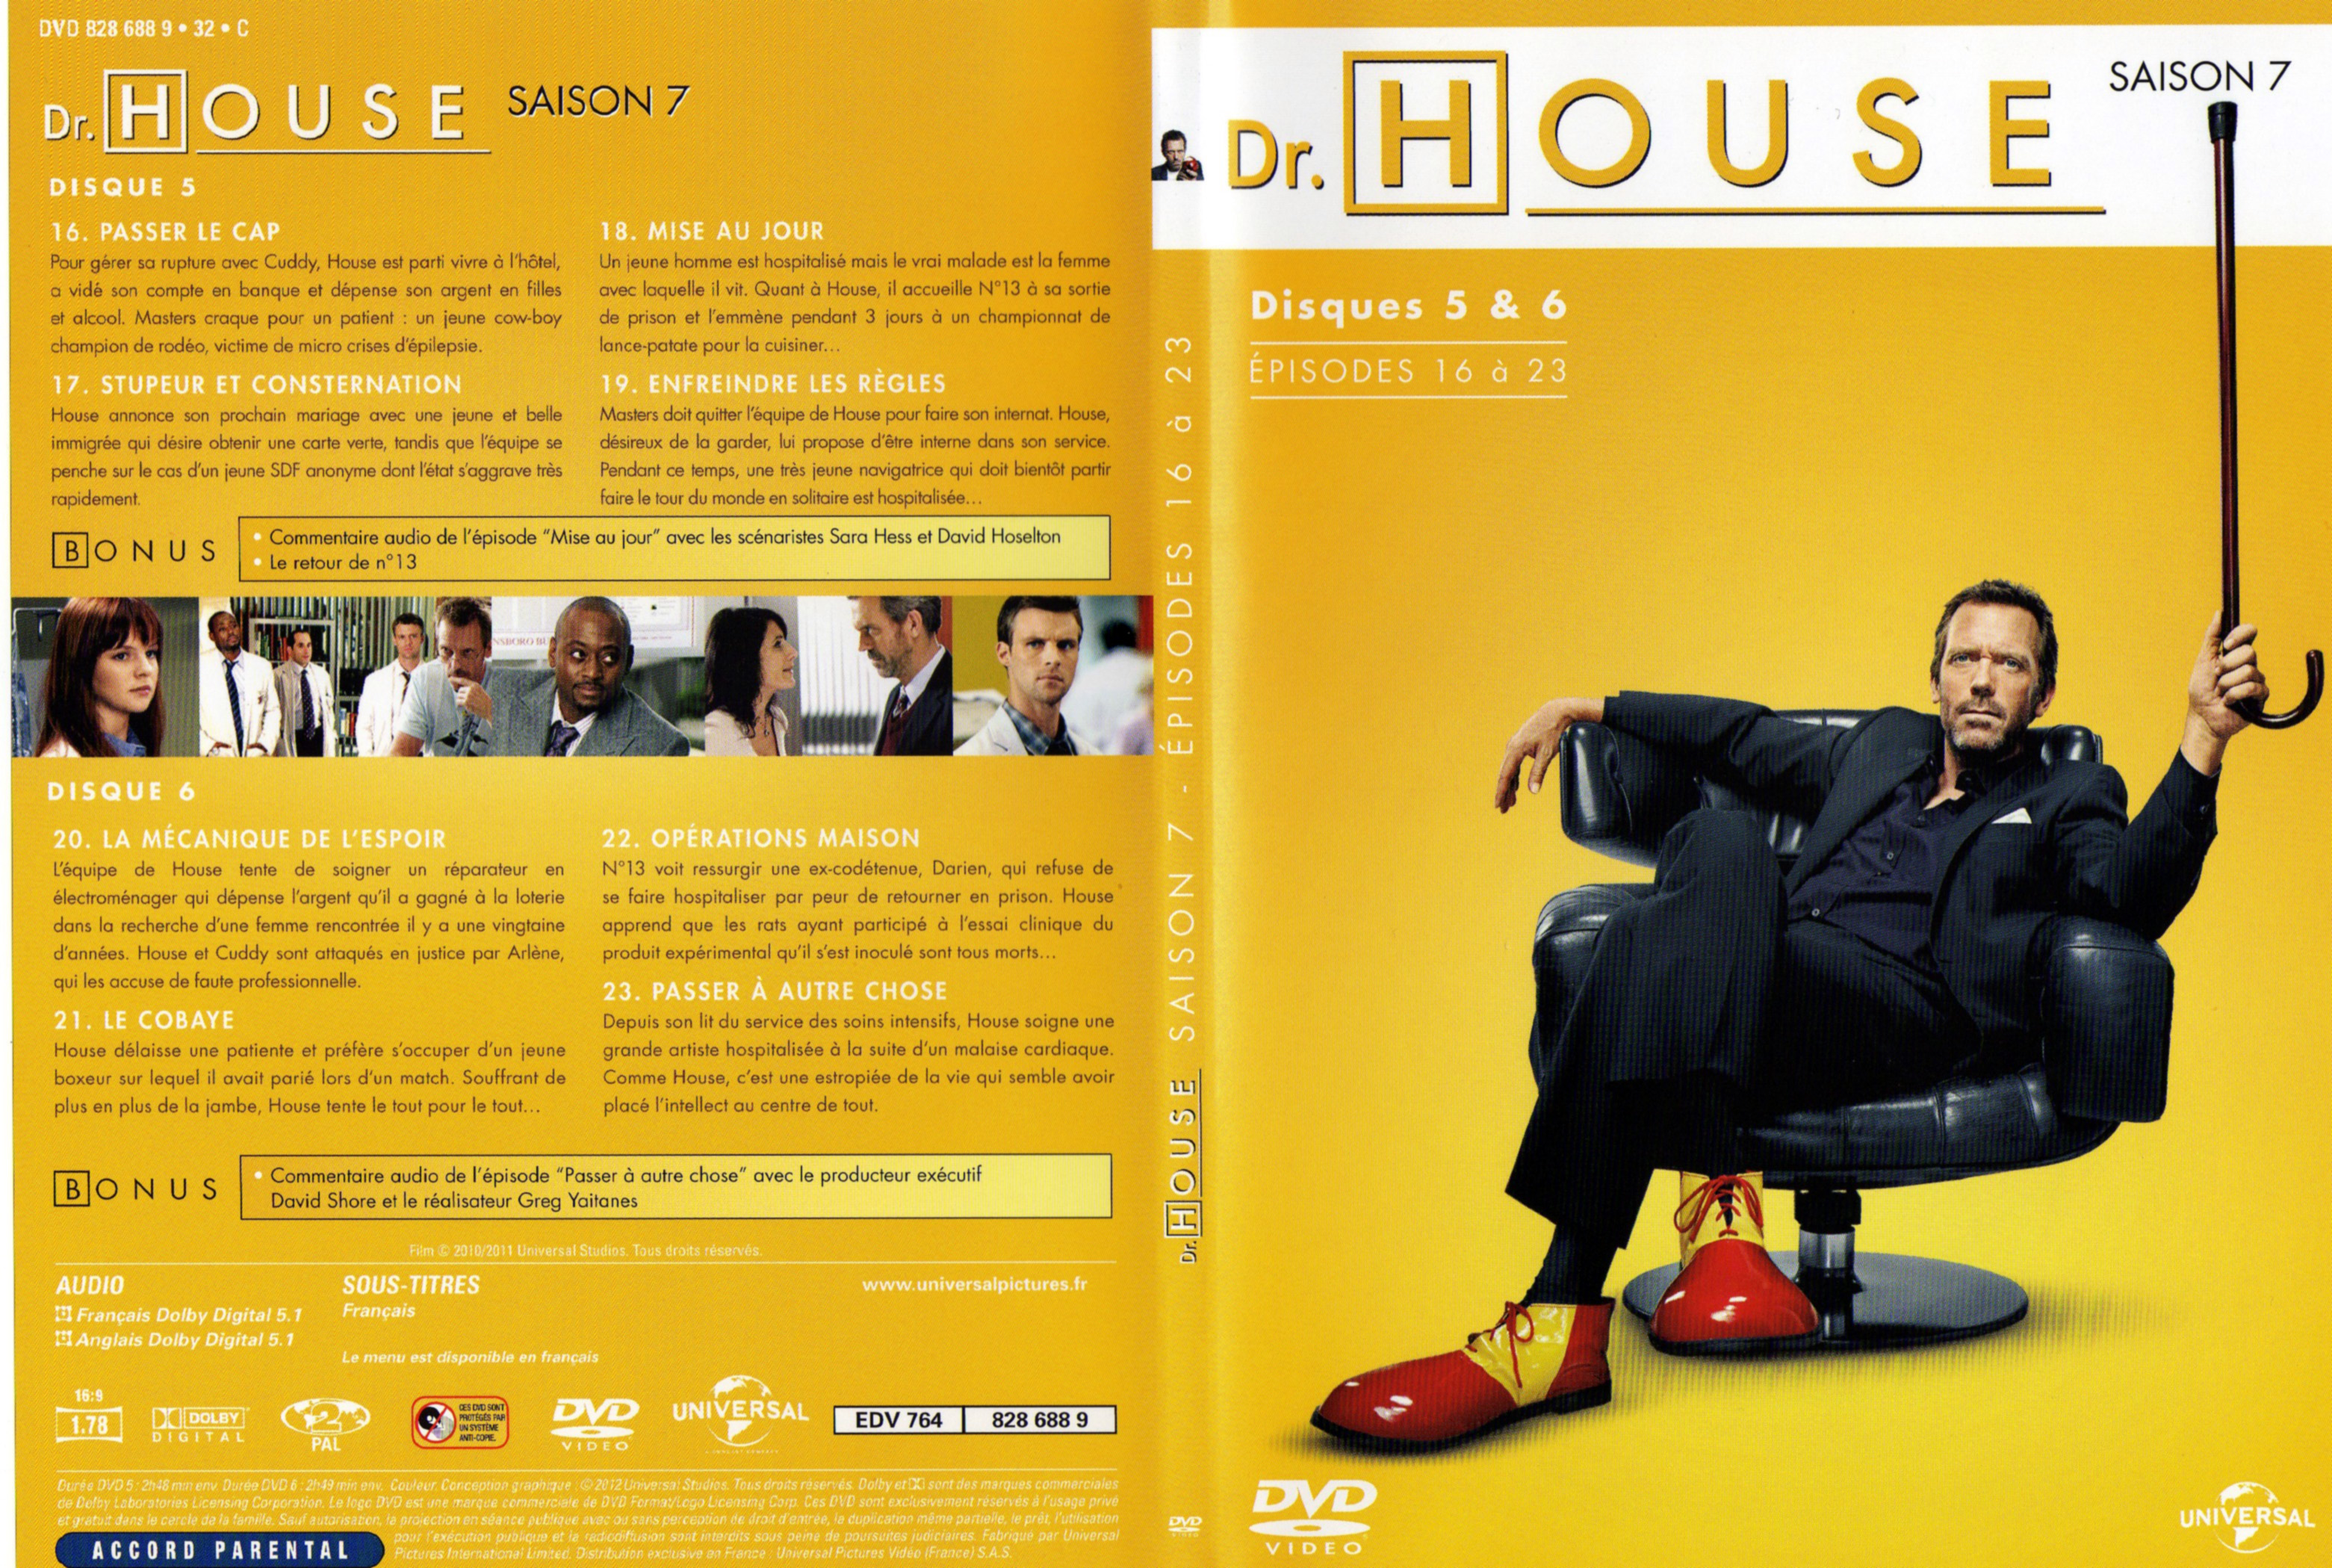 Jaquette DVD Dr House Saison 7 DVD 3